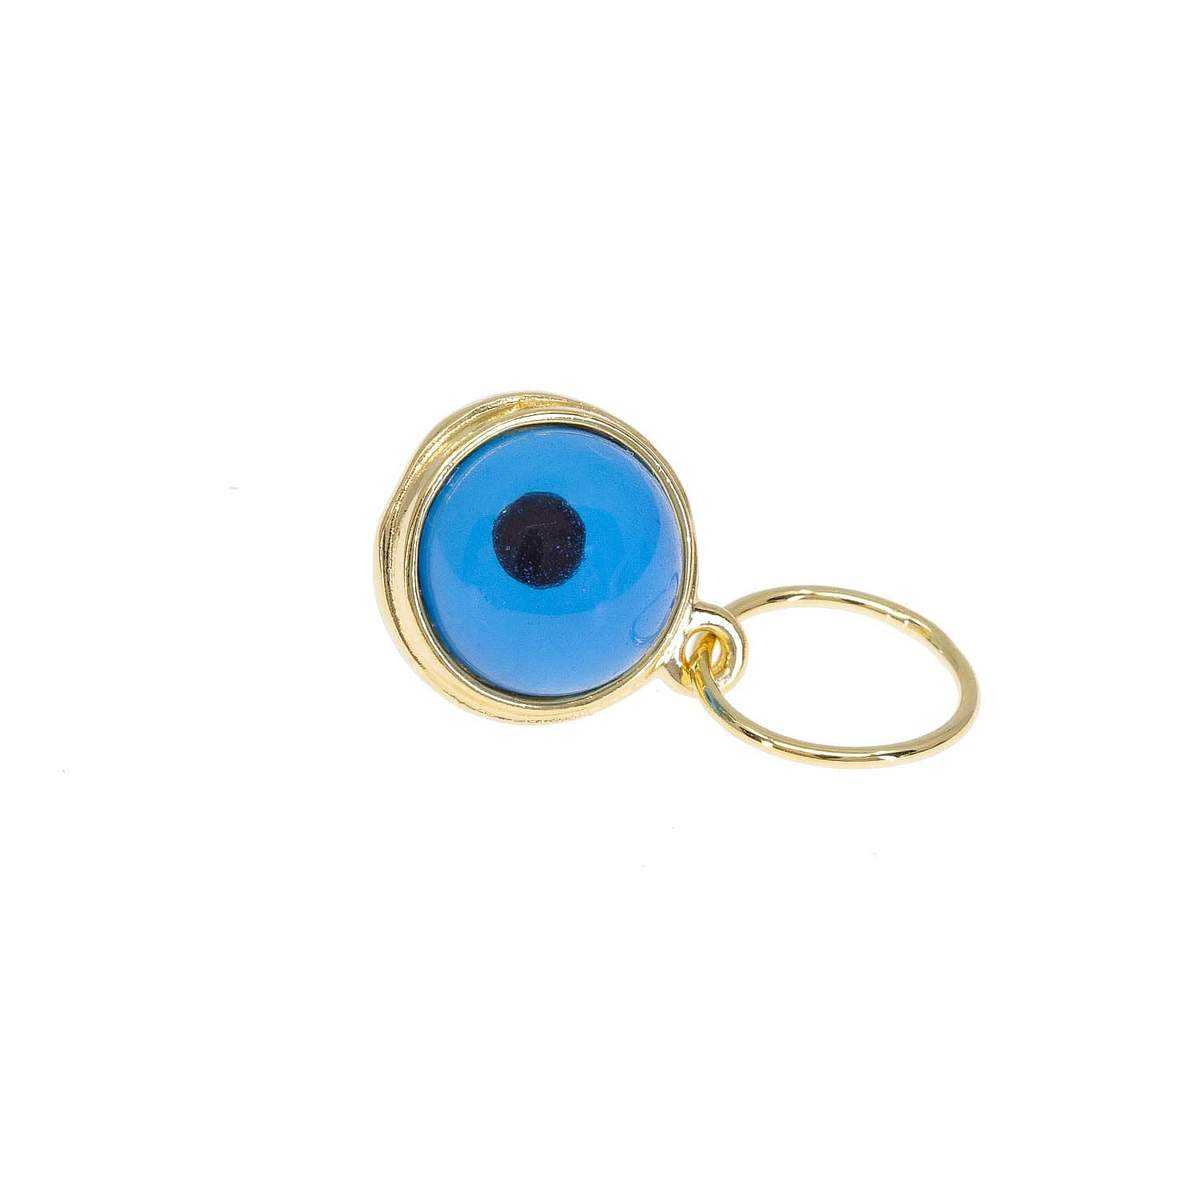 Blink of Blue Evil Eye Charm